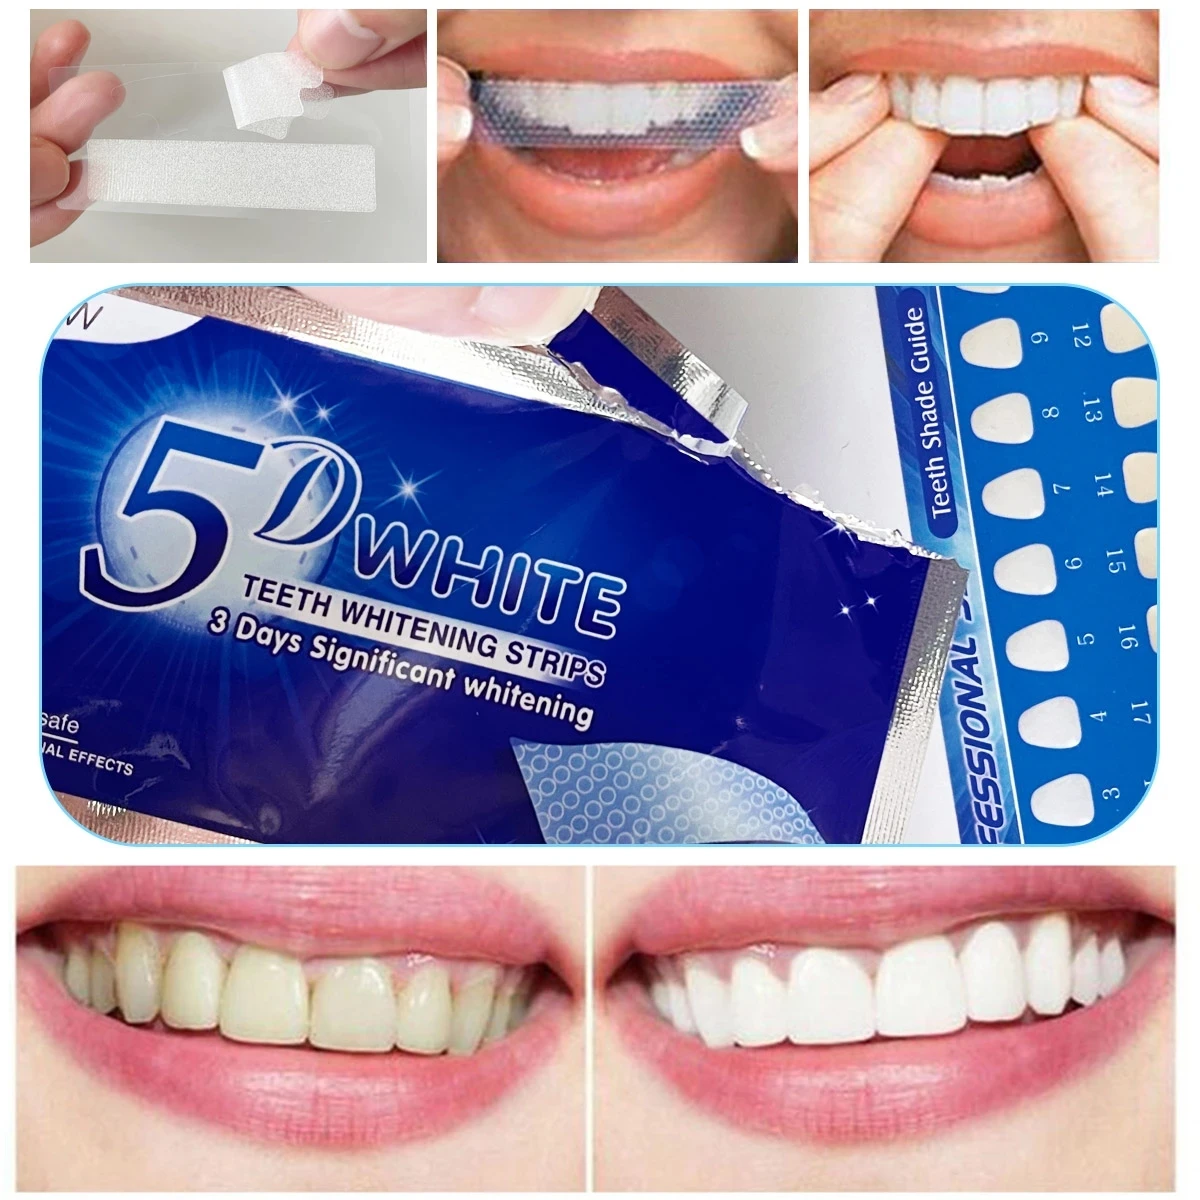 

5D гелевая полоска для гигиены полости рта, виниры для искусственных зубов, стоматологические полоски для отбеливания зубов, набор для отбел...